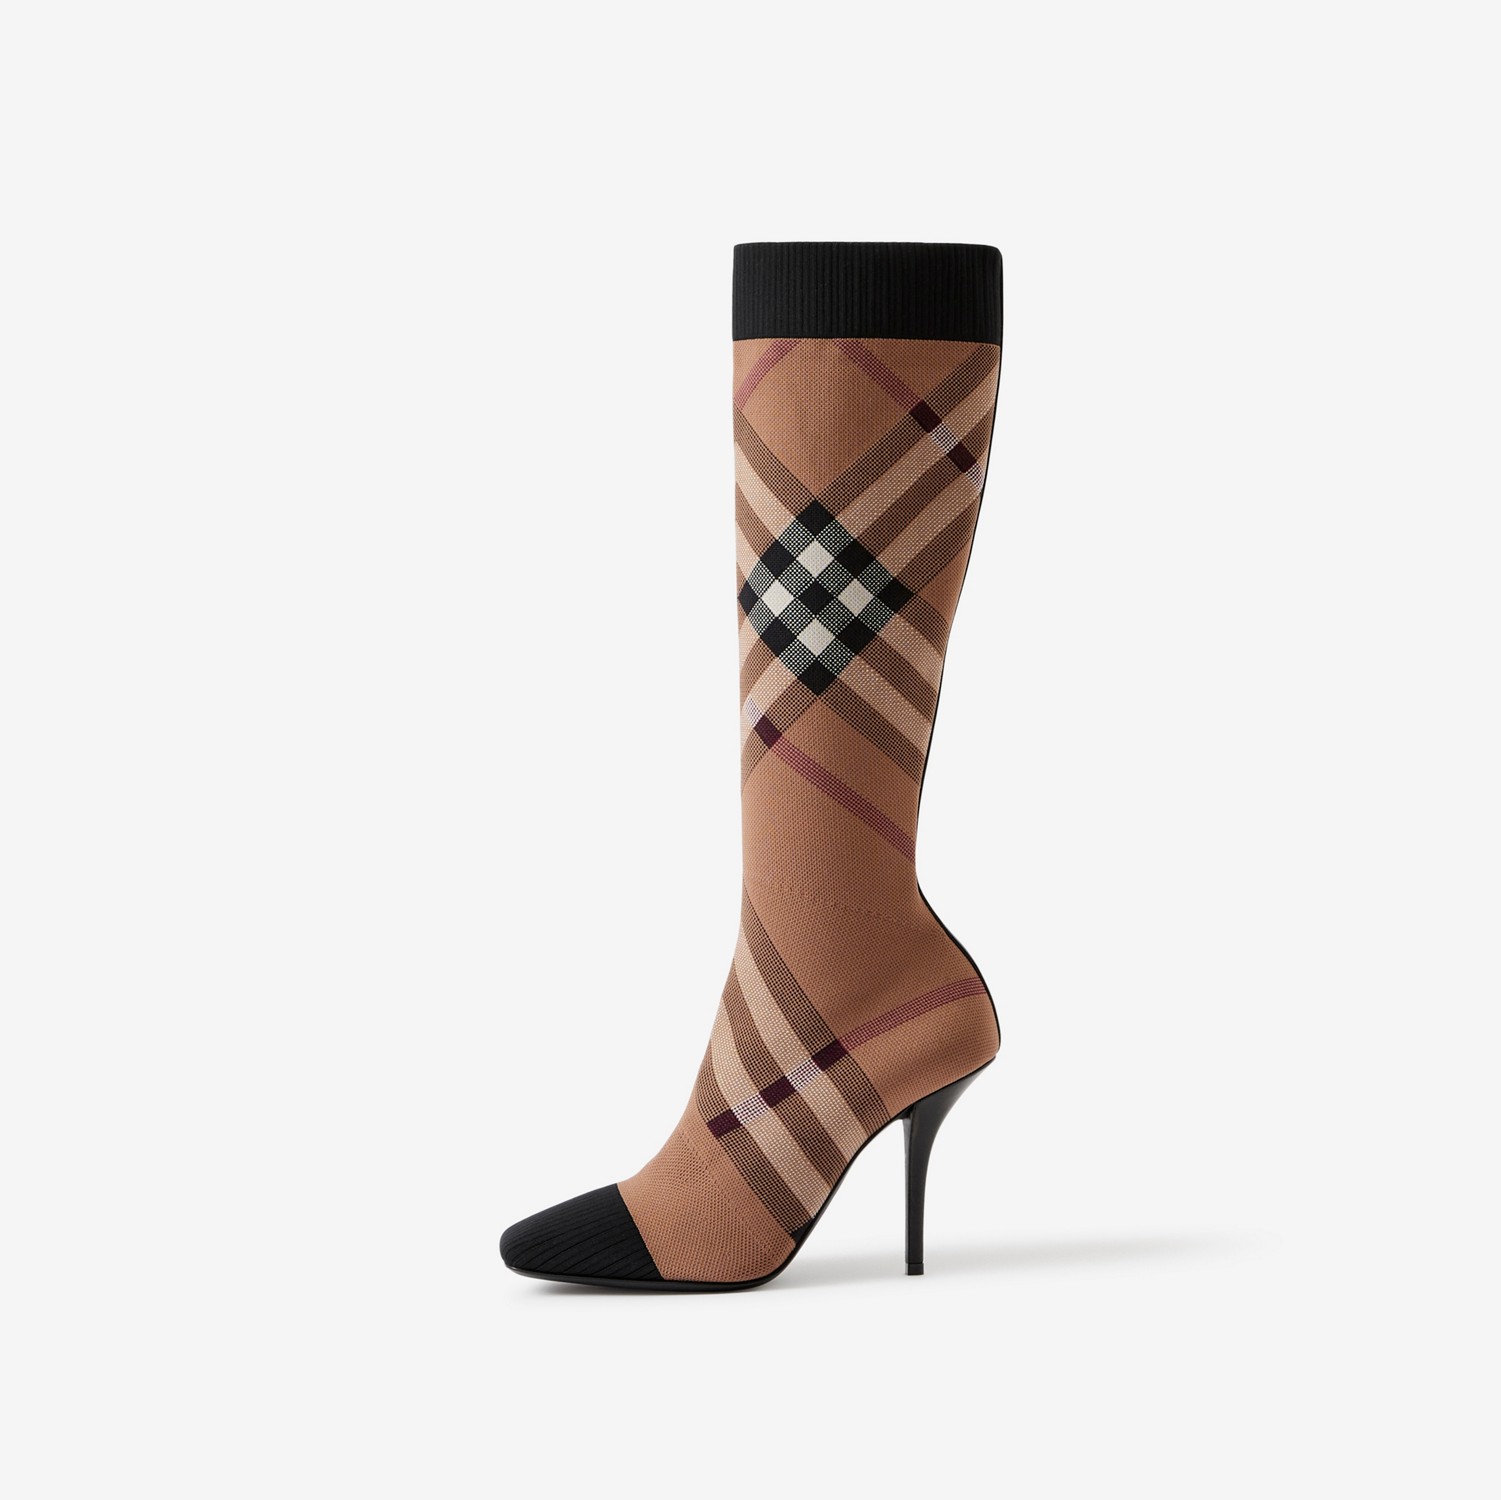 Gestrickte Socken-Stiefeletten mit Karomuster (Birkenbraun) - Damen | Burberry®